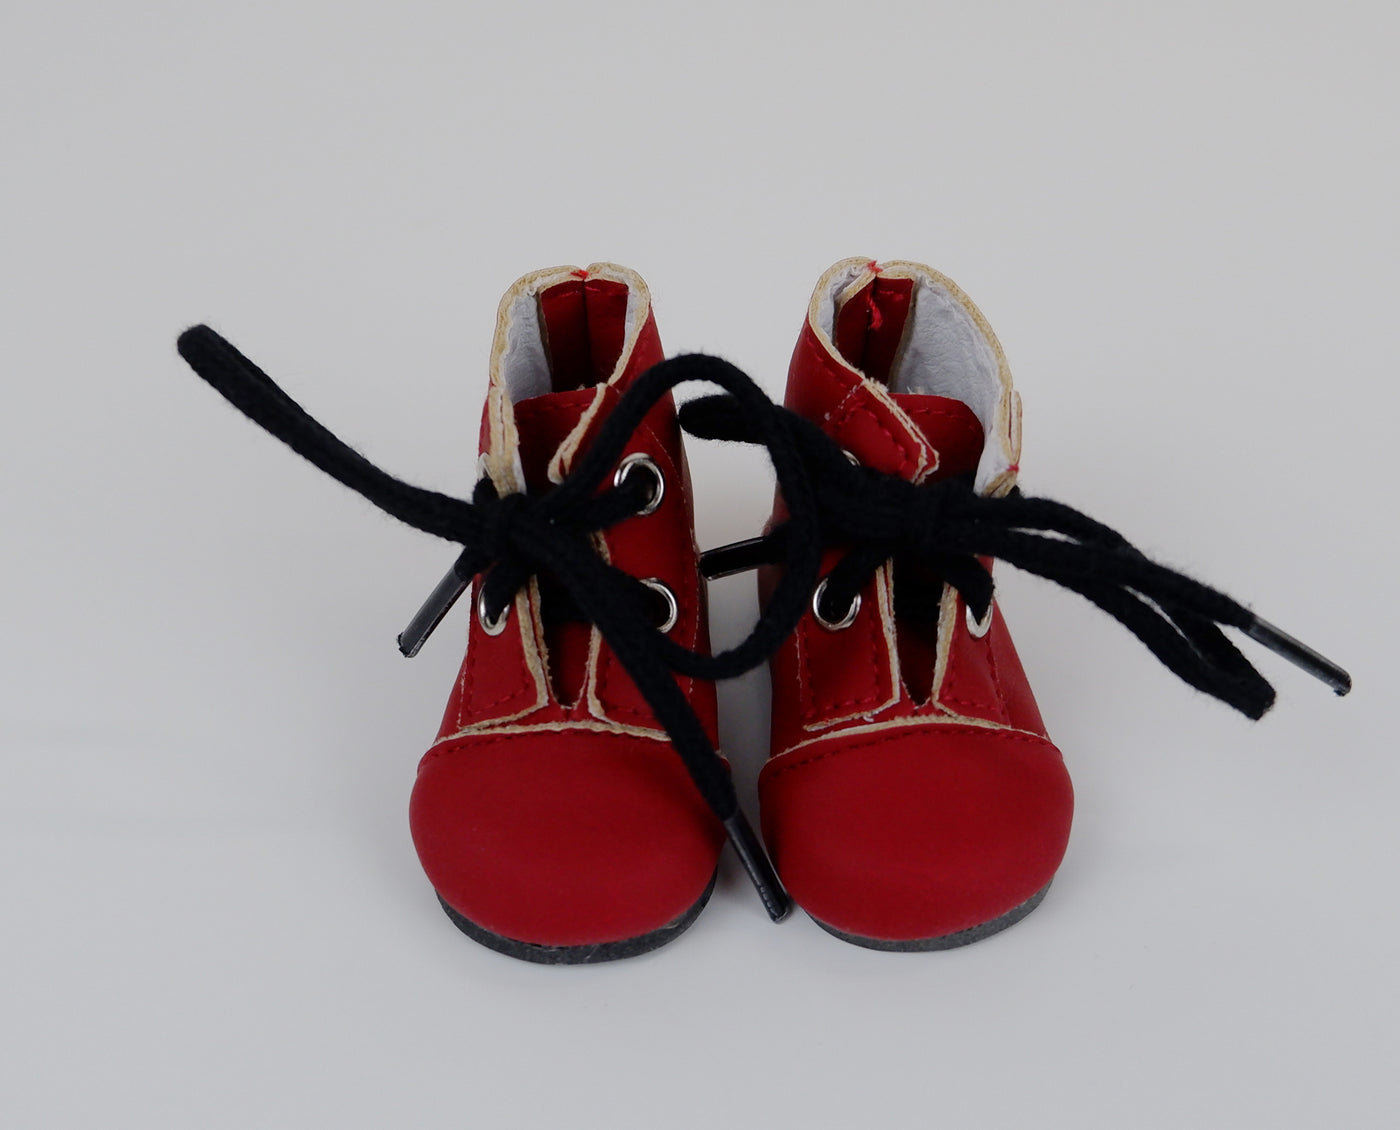 Ankle Lace Up Boots - Matte Crimson